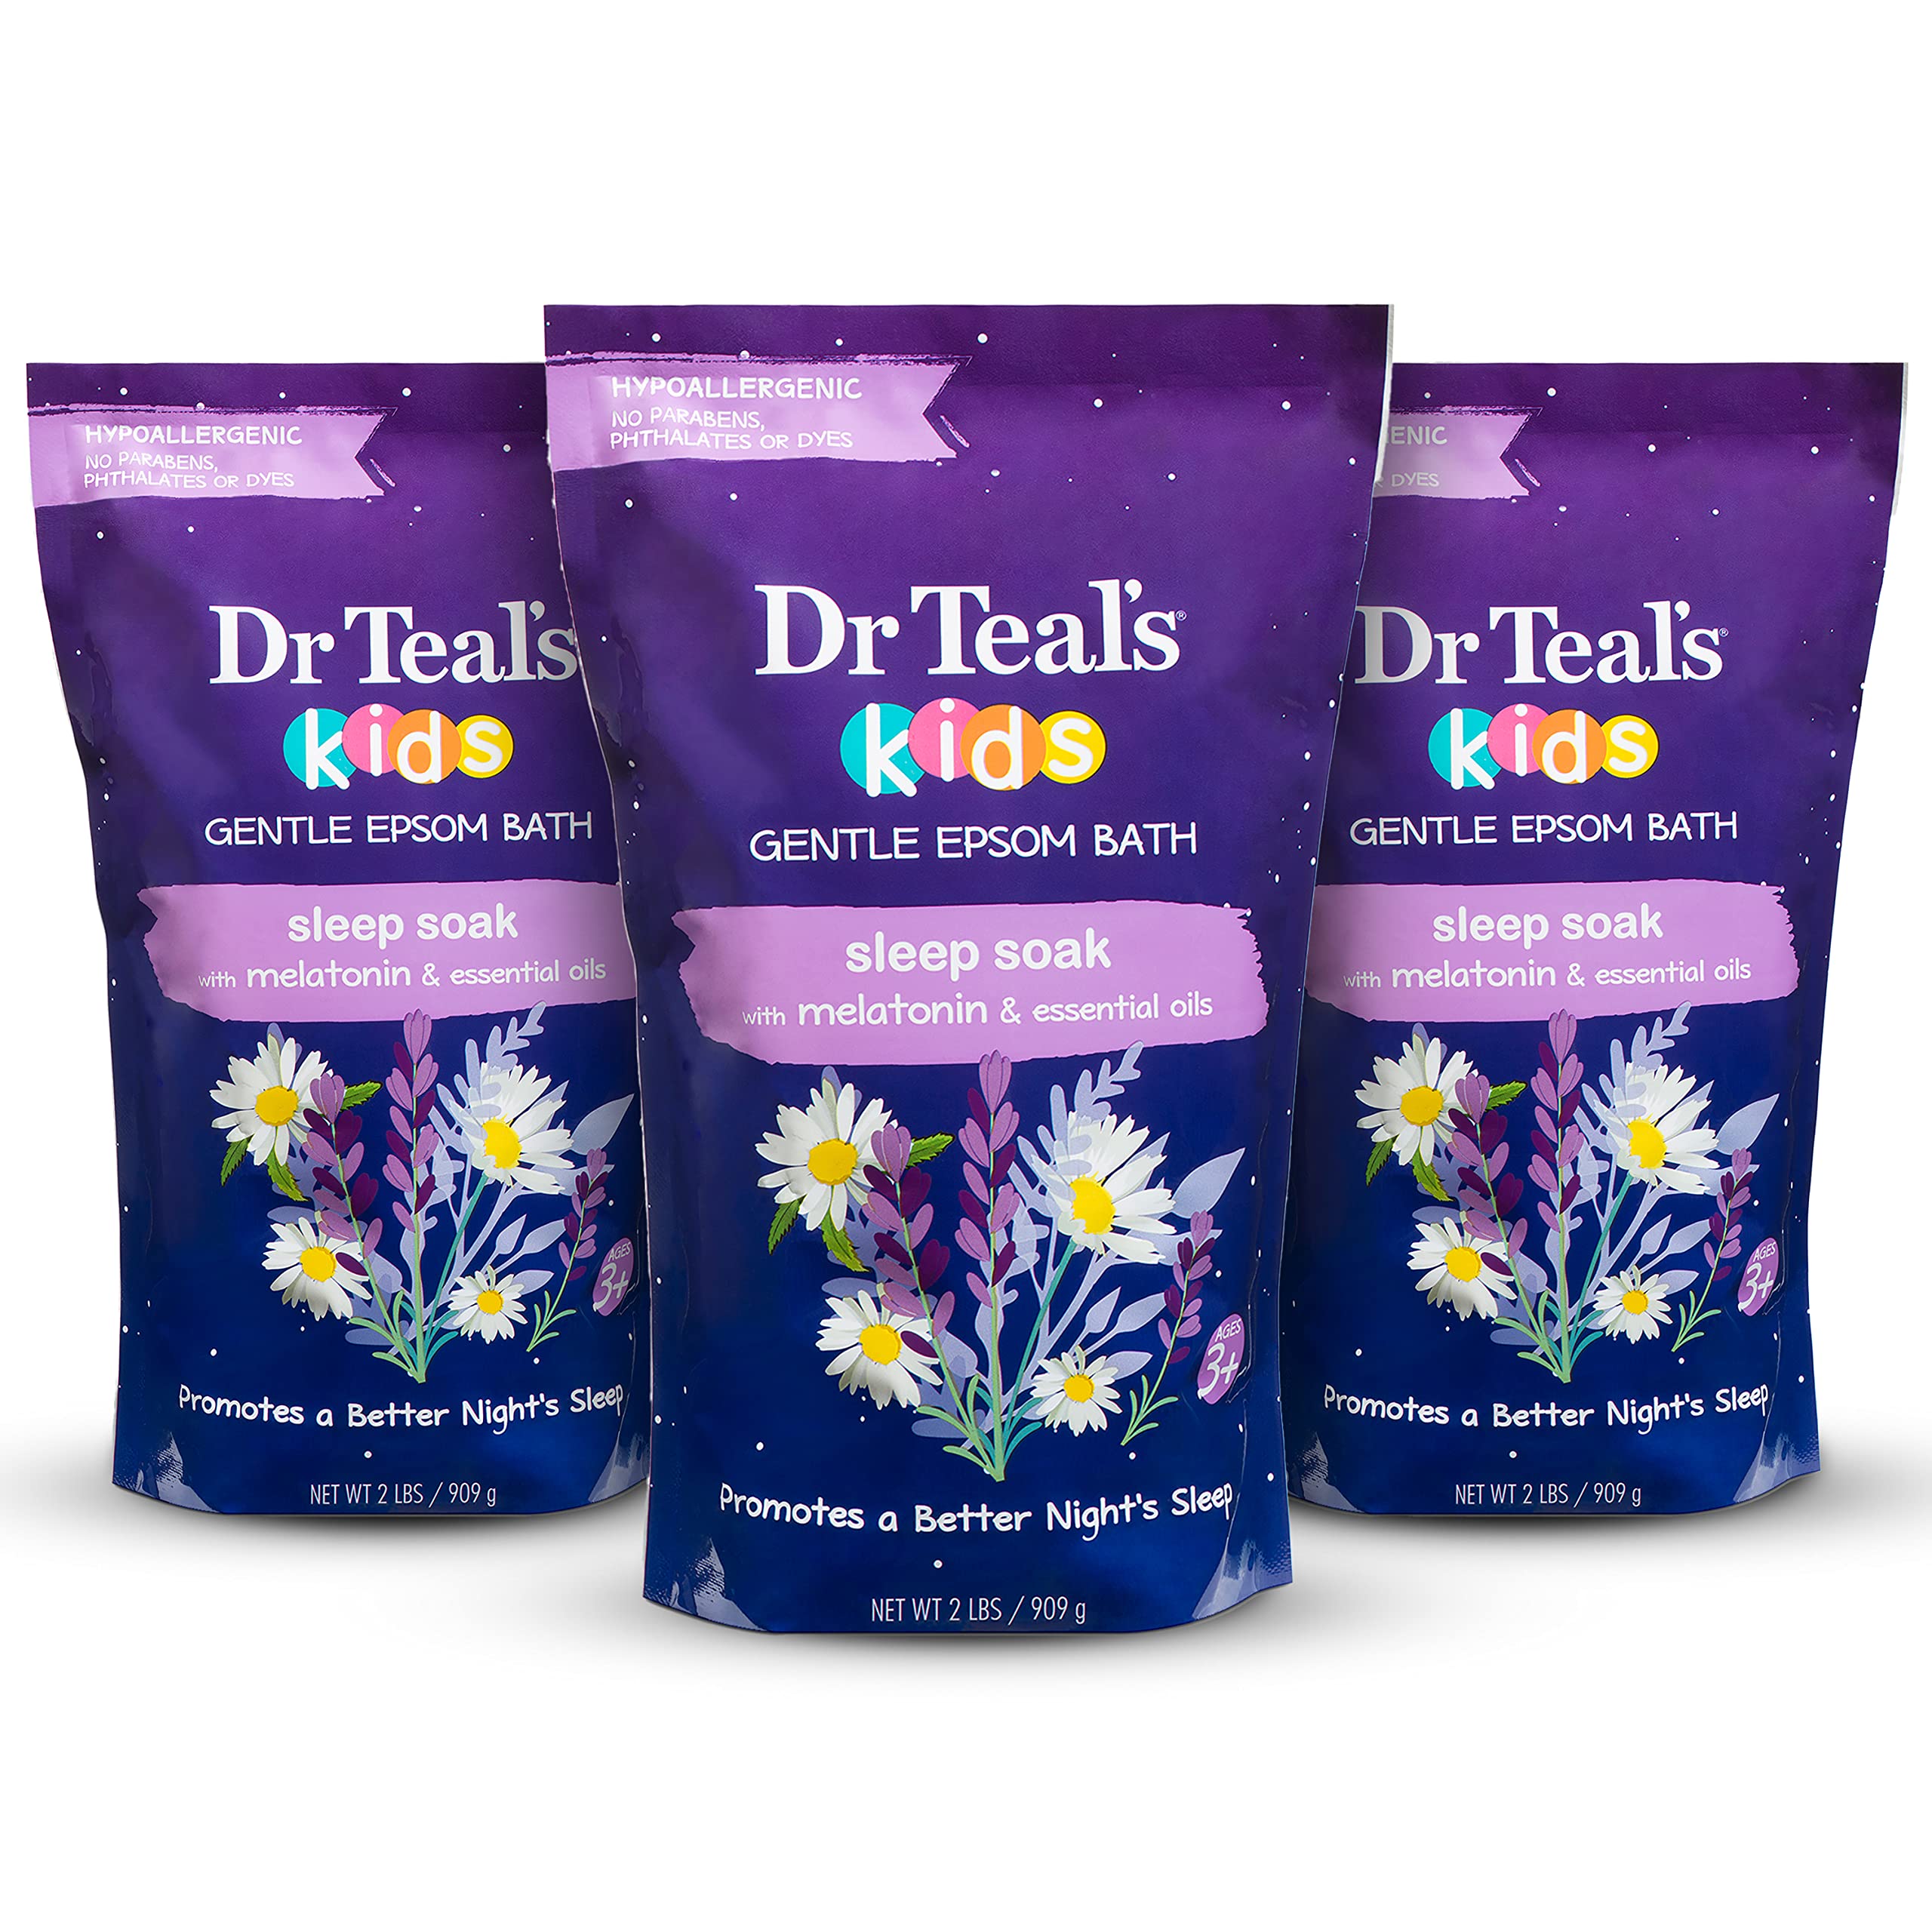 Dr Teal's Kids Gentle Epsom Salt, Sleep Soak with Melatonin, 2 lbs (Pack of 3) (Packaging May Vary)